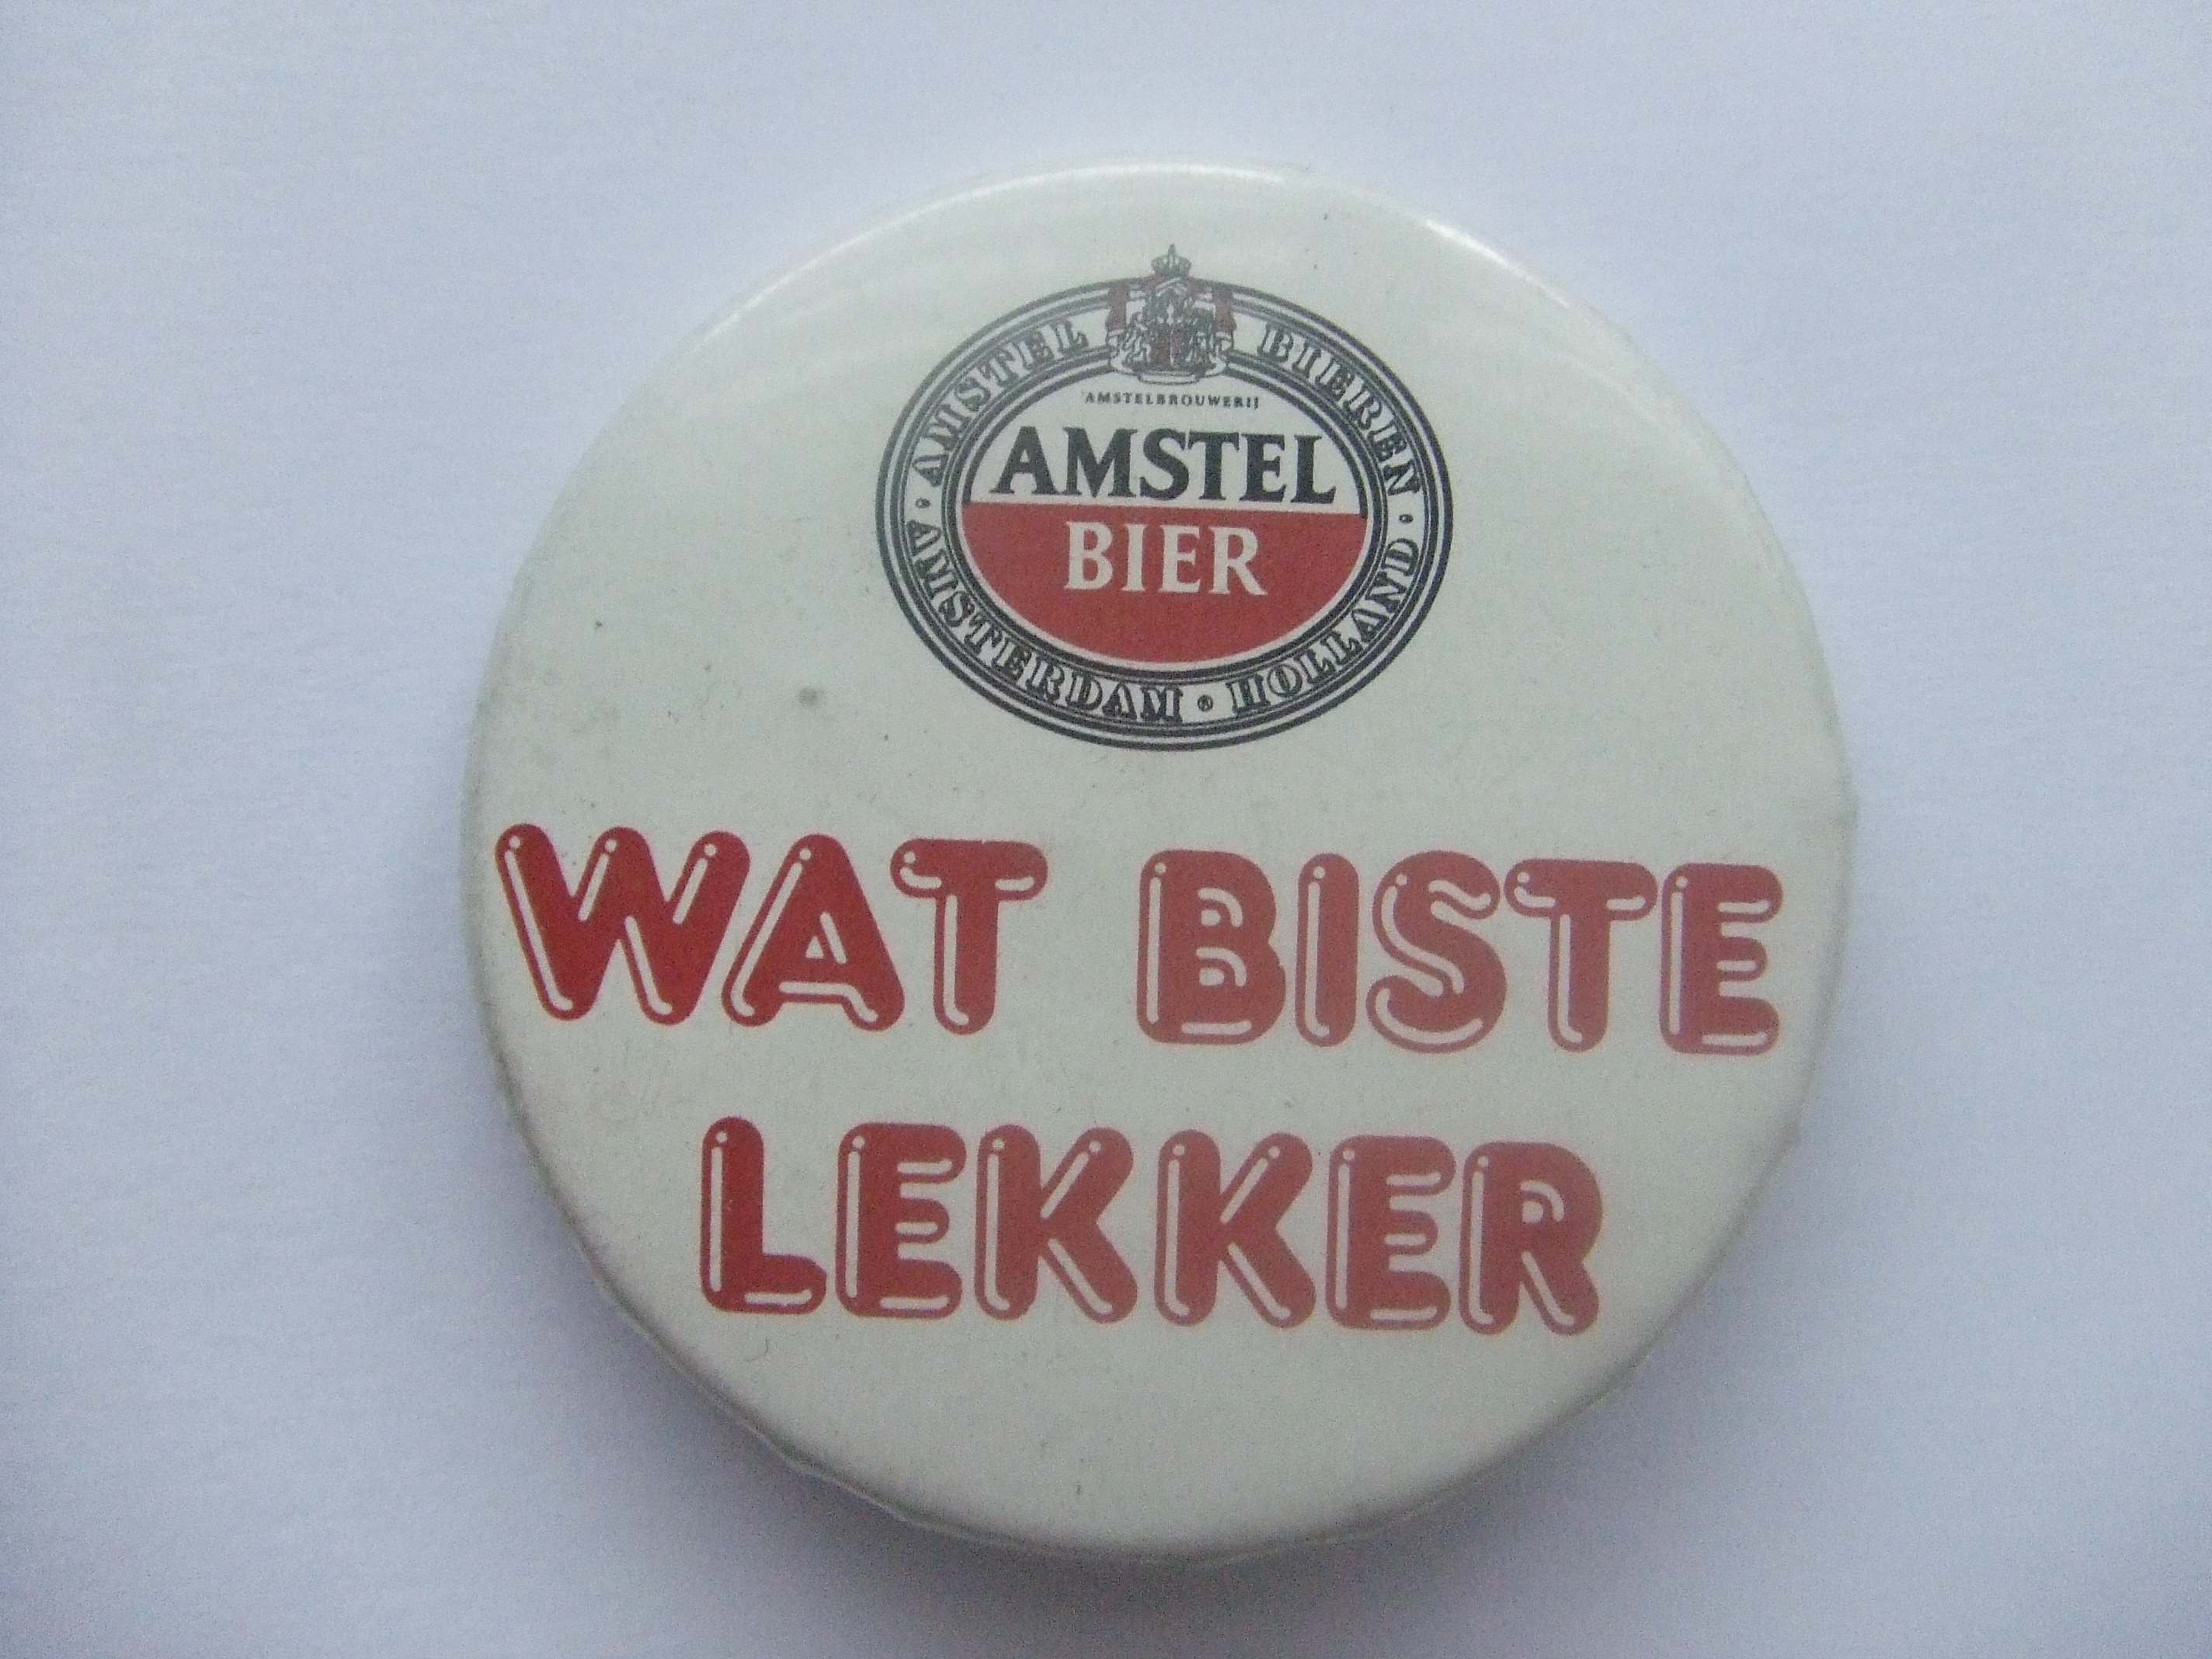 Amstel bier wat biste lekker